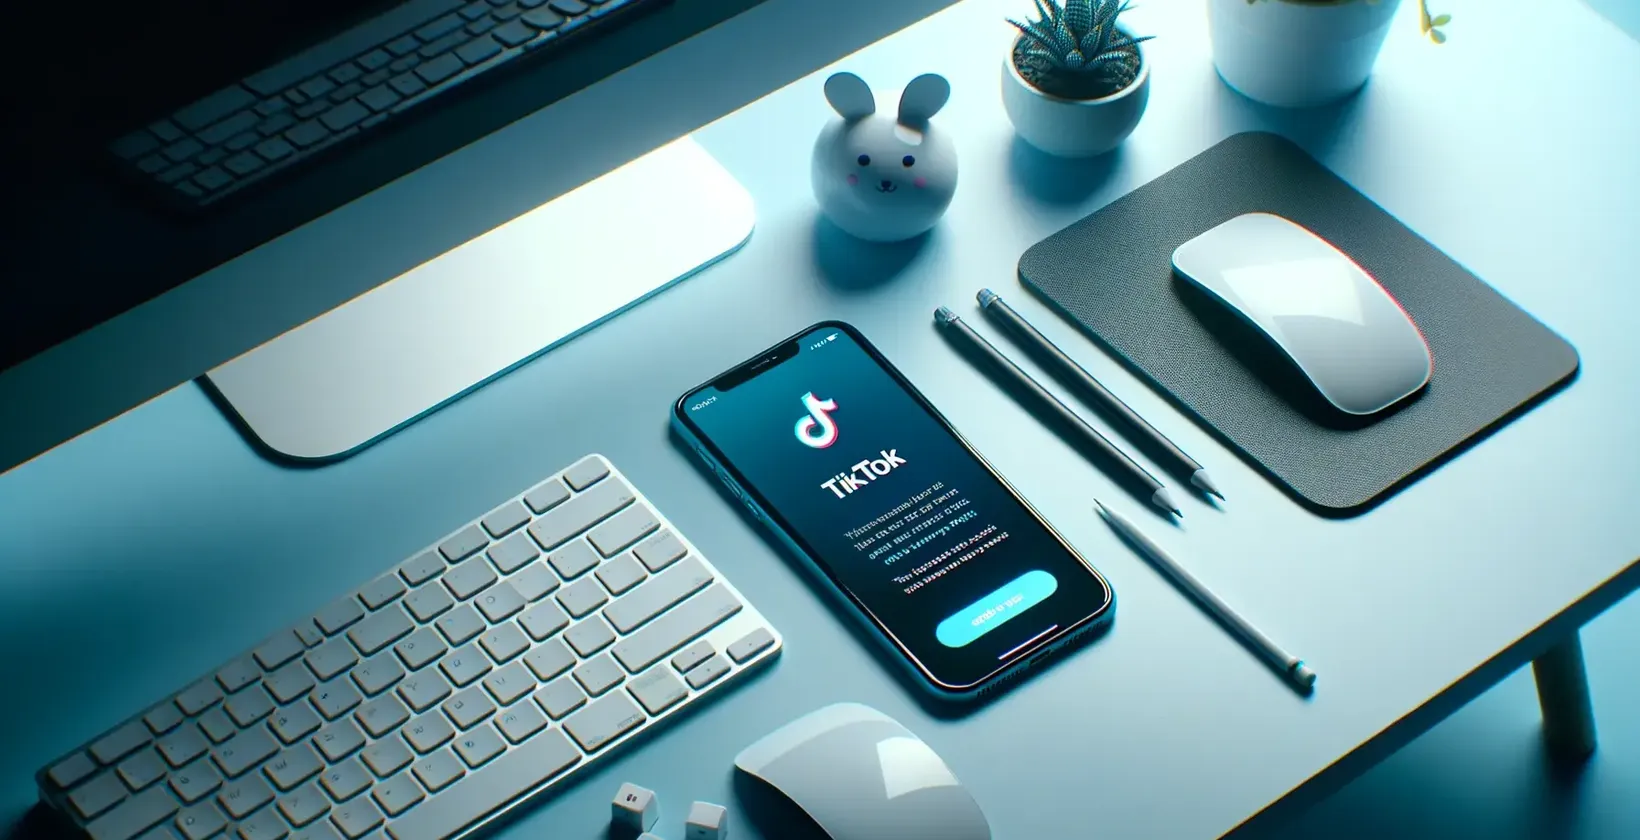 Smarttelefon med applikasjonen TikTok@ åpen, omgitt av tastatur, mus og skrivebordselementer på et blåbelyst bord.